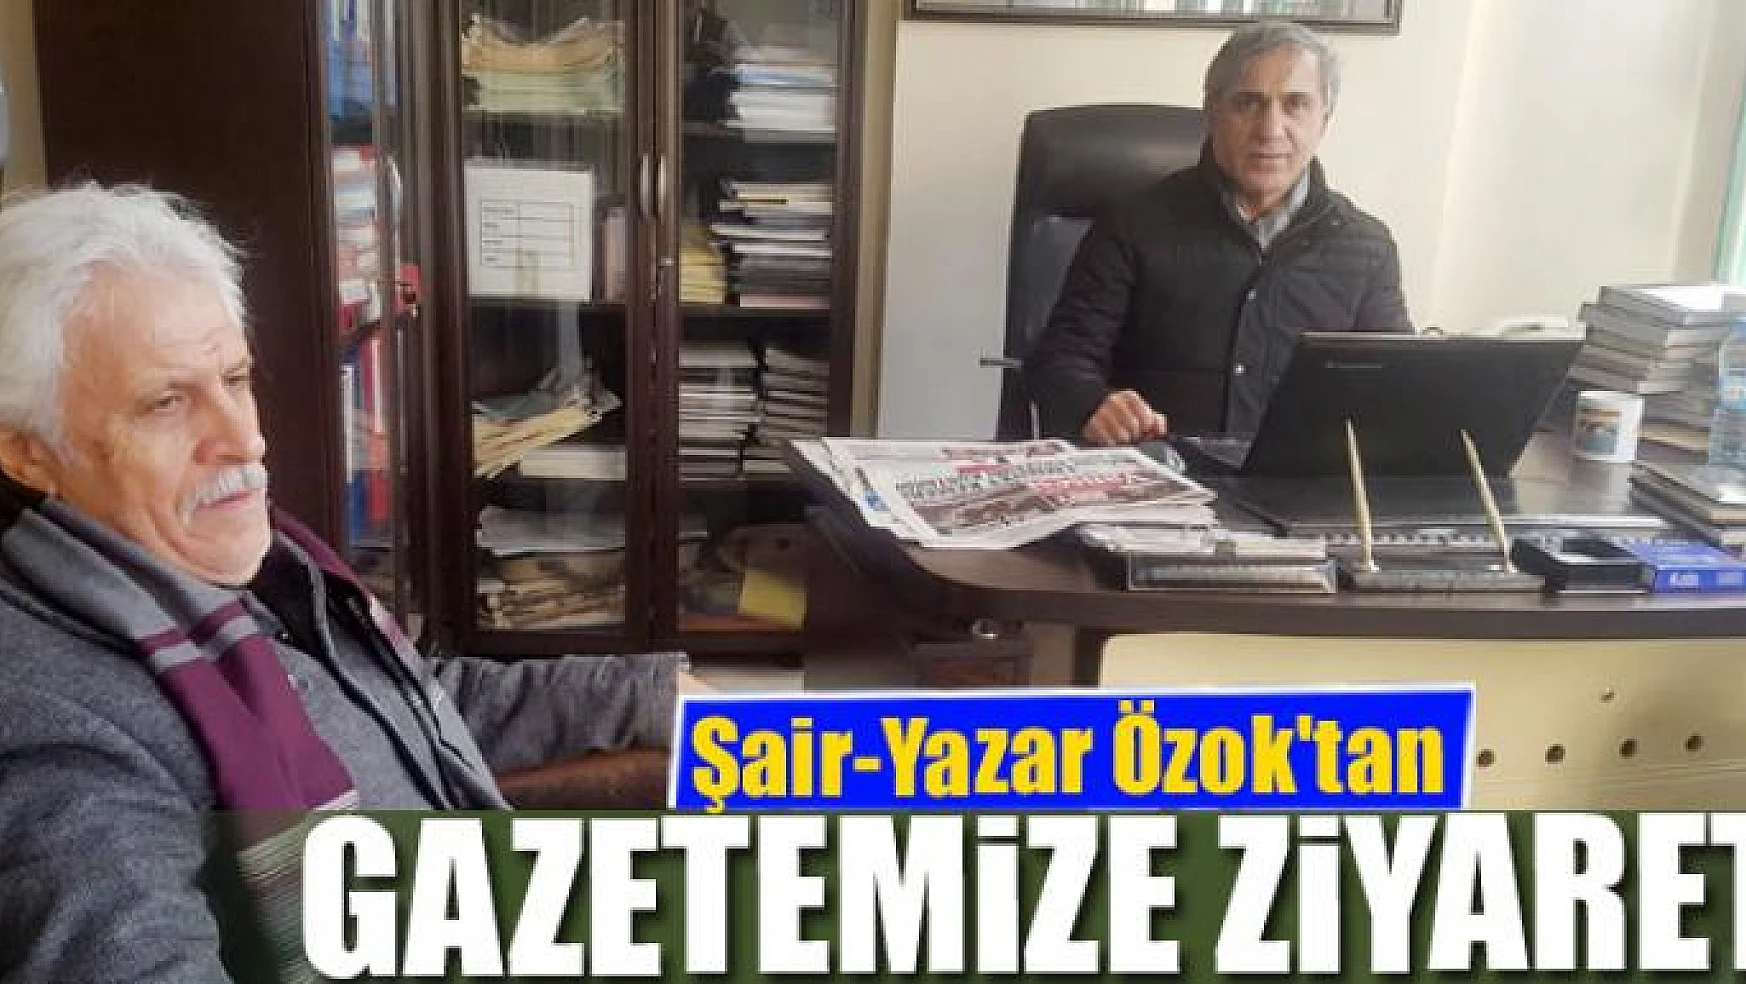 Şair-Yazar Özok'tan gazetemize ziyaret